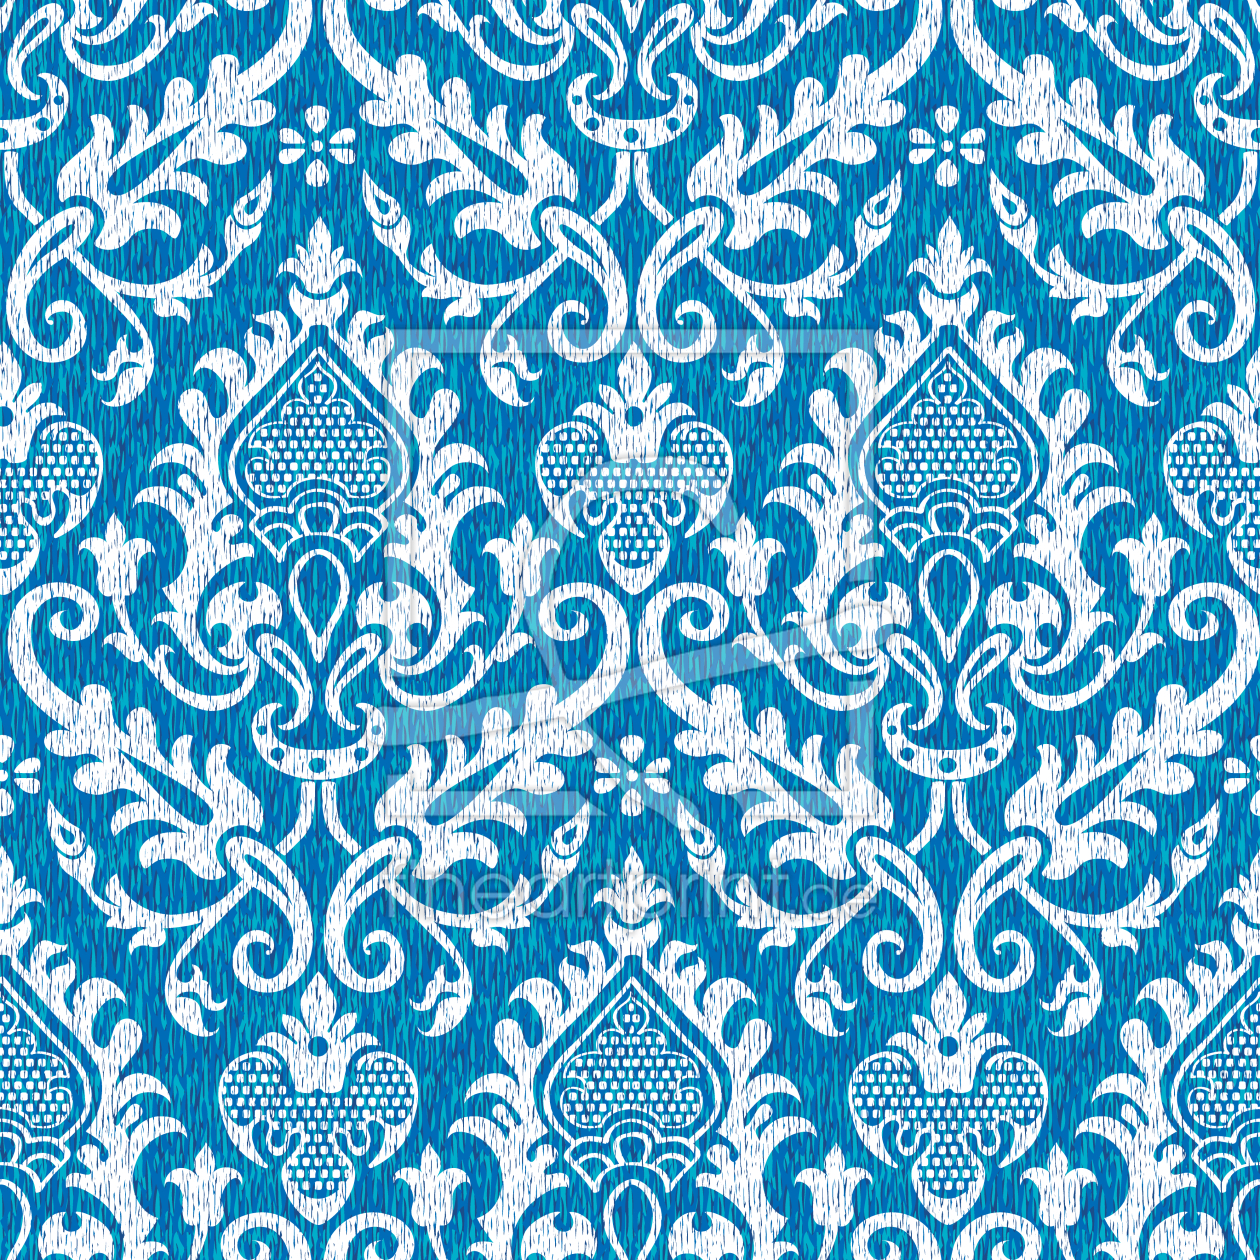 Bild-Nr.: 9009637 Mittelalterlicher Wandteppich erstellt von patterndesigns-com